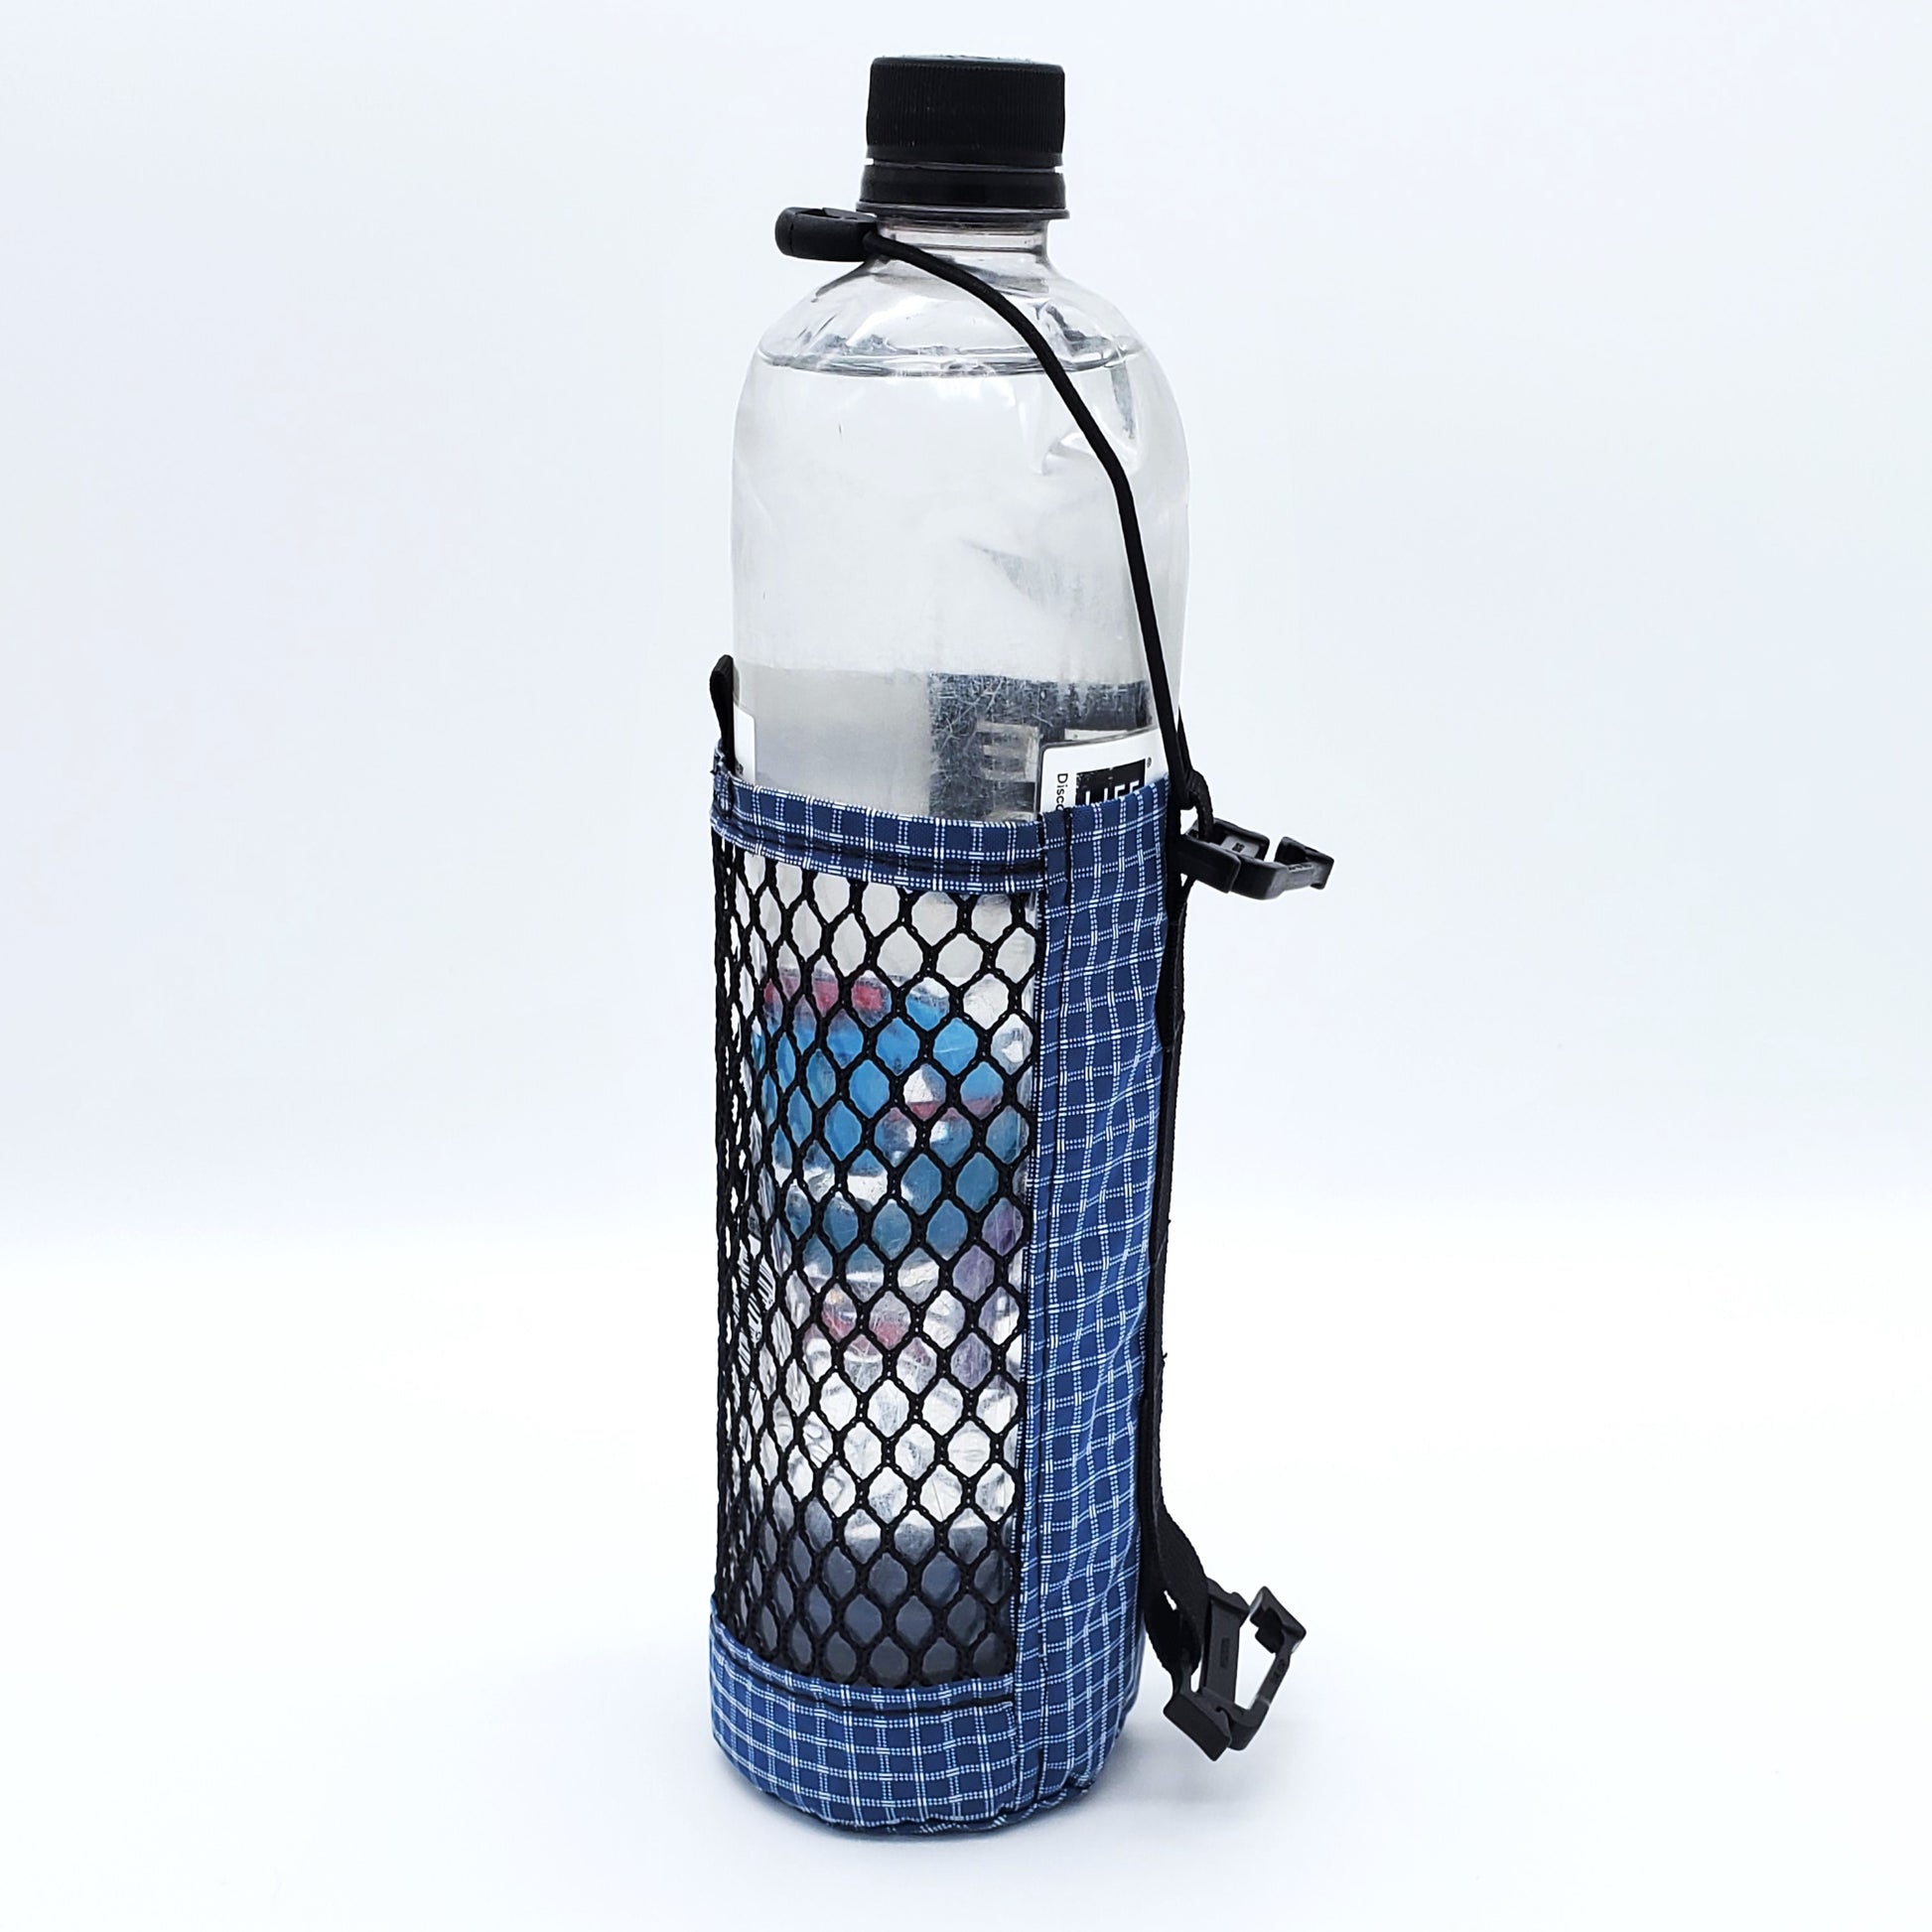 Ultralight Water Bottle Sleeve - Trekker Joe's